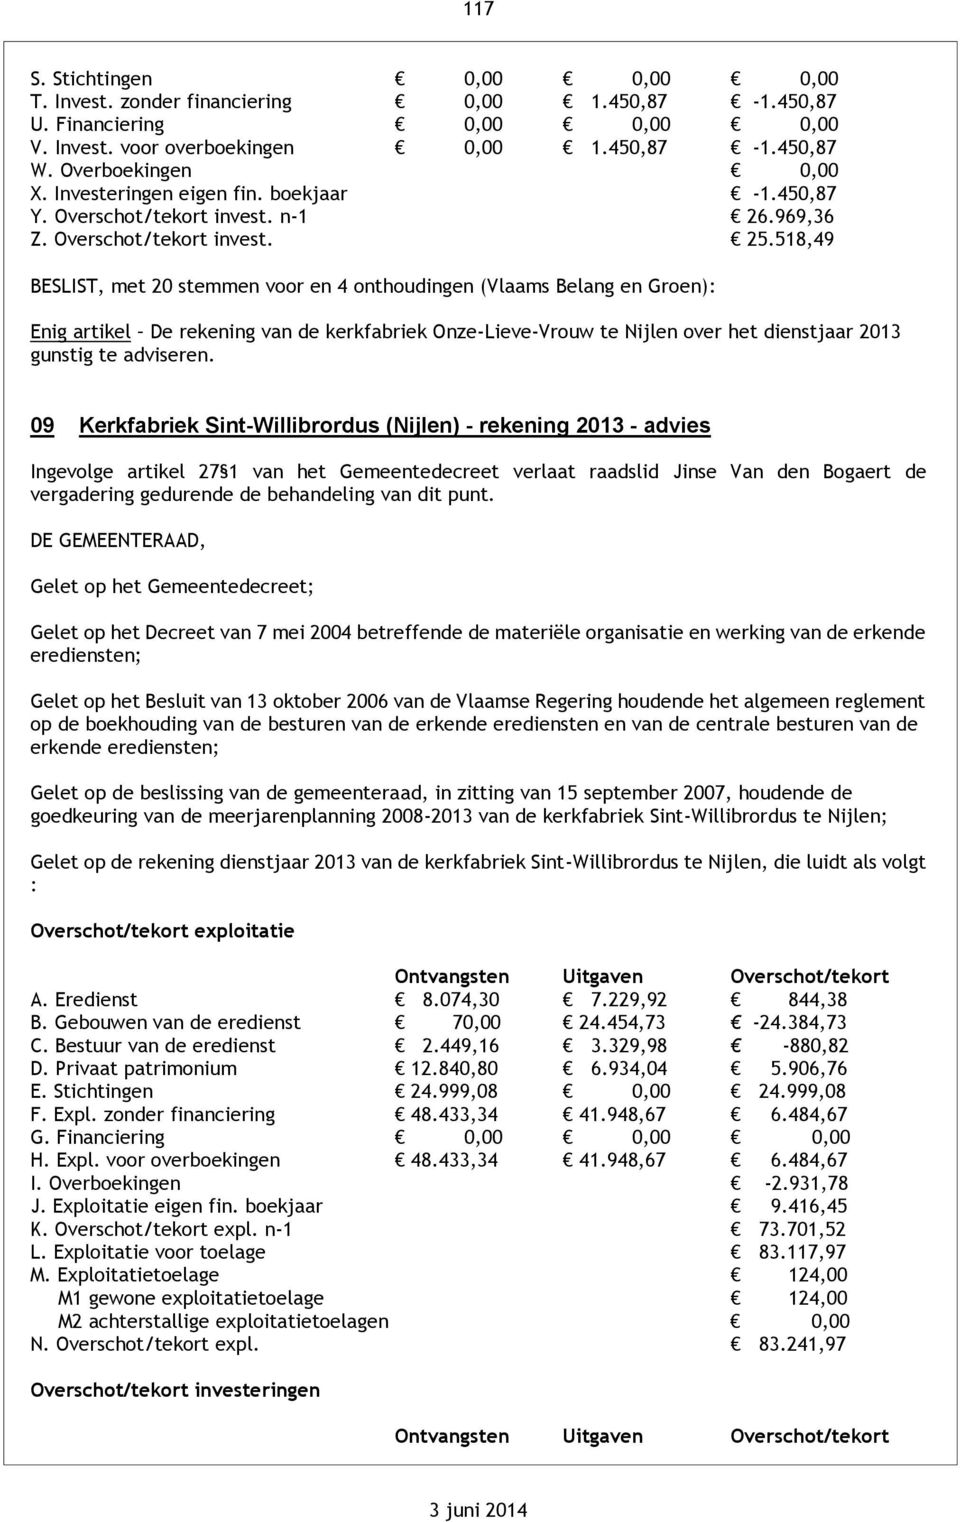 518,49 BESLIST, met 20 stemmen voor en 4 onthoudingen (Vlaams Belang en Groen): Enig artikel De rekening van de kerkfabriek Onze-Lieve-Vrouw te Nijlen over het dienstjaar 2013 gunstig te adviseren.